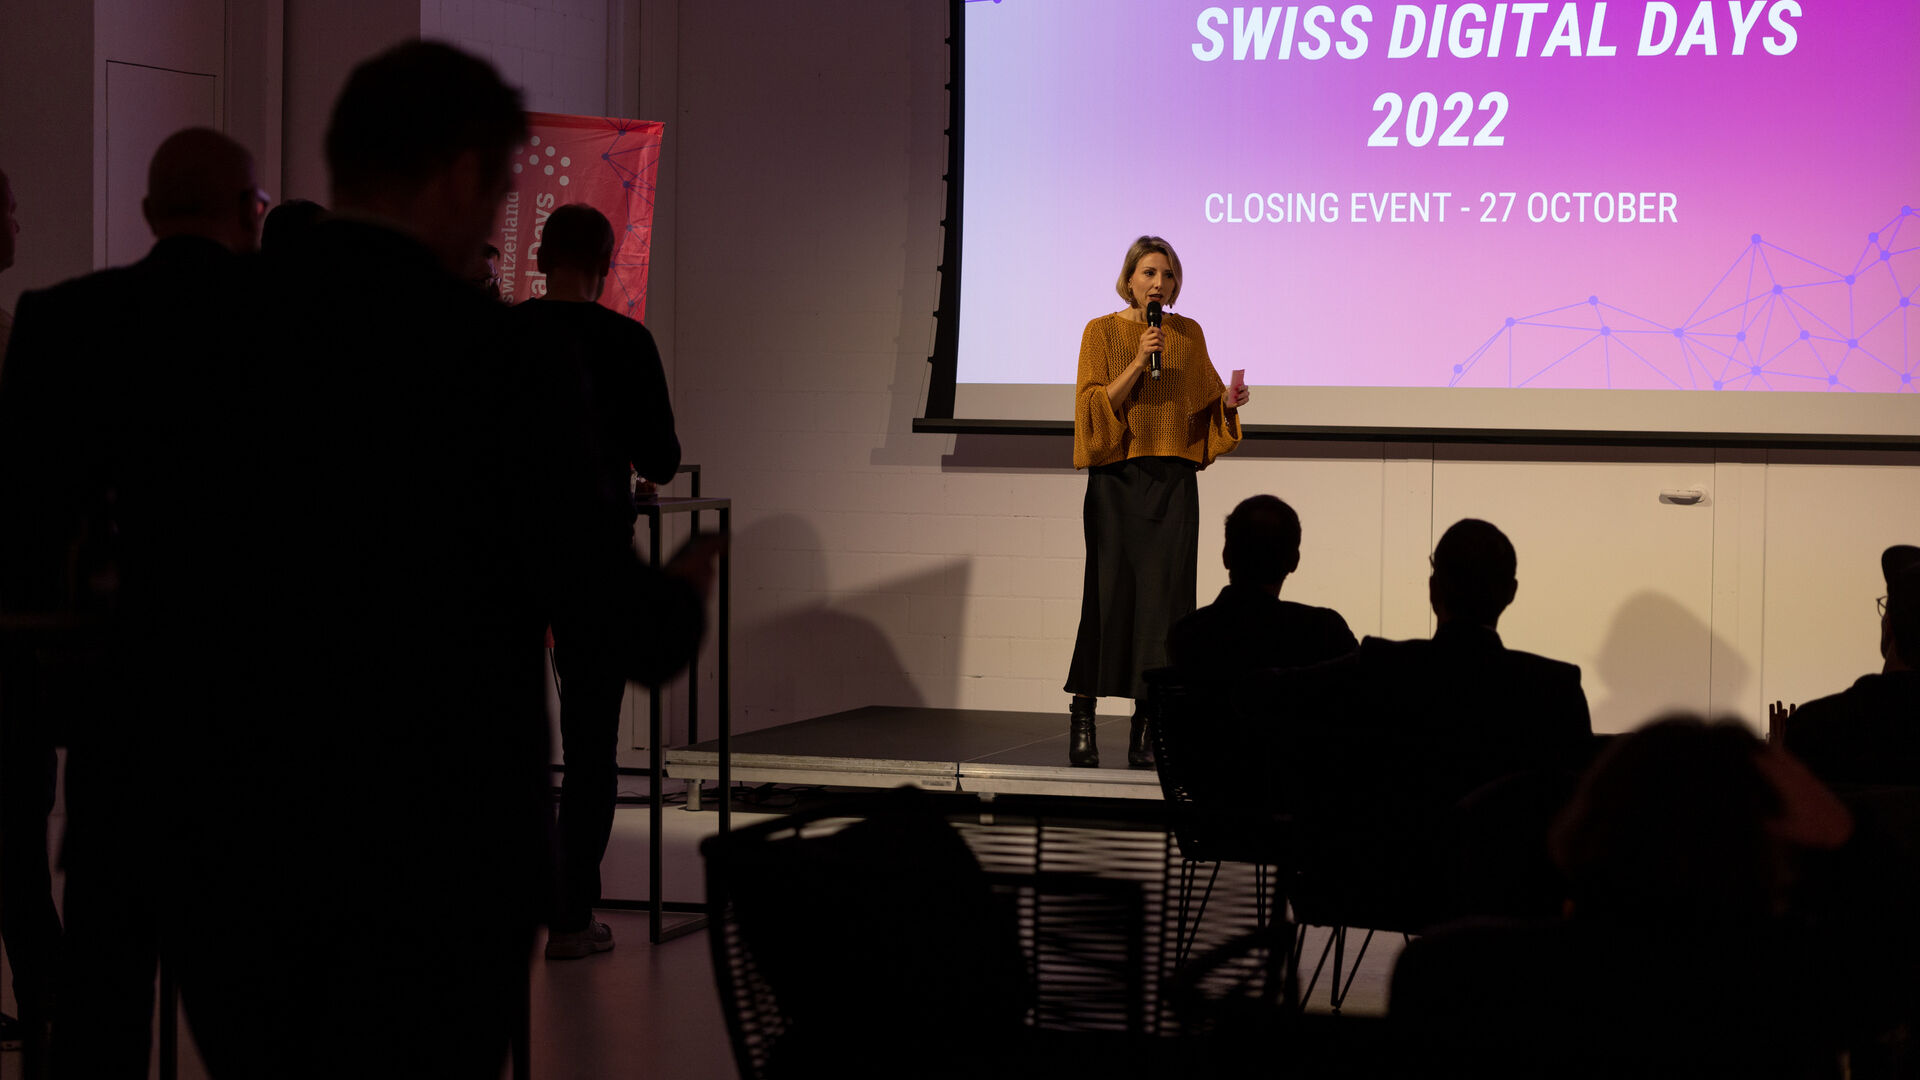 Giornate Digitali Svizzere: l’evento conclusivo delle “Giornate Digitali Svizzere” 2022 alla Freiruum di Zugo (Zugo) il 27 ottobre: l’intervento di Diana Engetschwiler, Vice Direttore Generale di digitalswitzerland